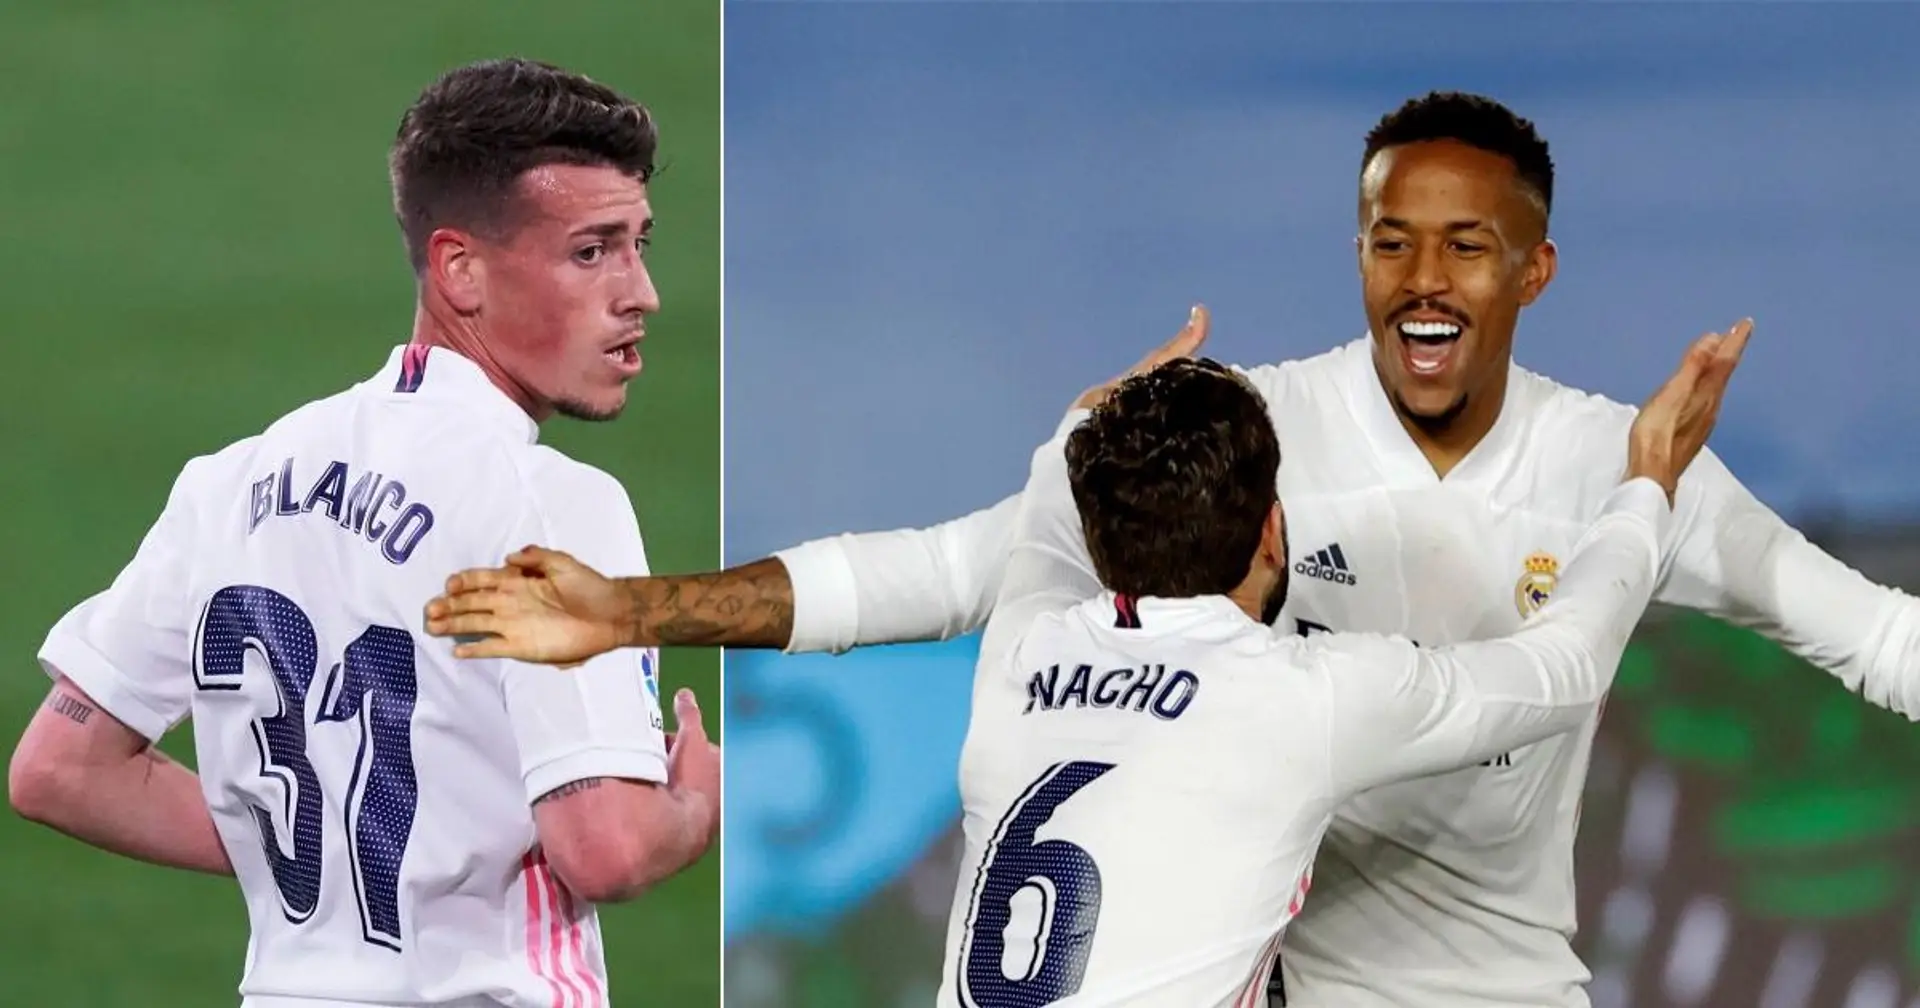 Militao - 10, Blanco - 8: les notes des joueurs du Real Madrid après un brillant succès face à Osasuna